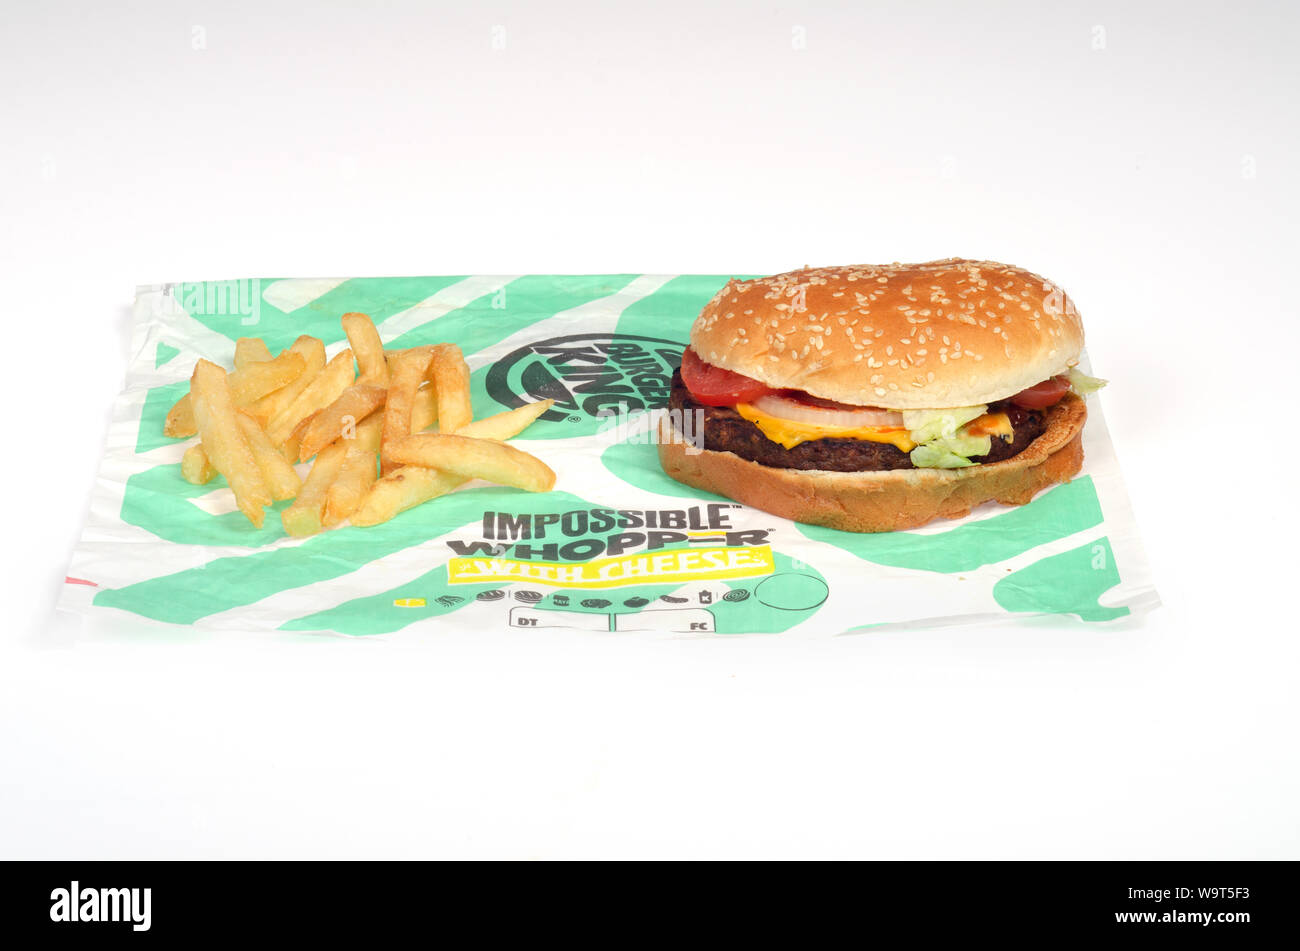 Burger King Whopper impossible avec le fromage et les frites sur l'emballage un burger végétarien sandwich fait avec une impossible sans viande à base de plantes, aliments Banque D'Images